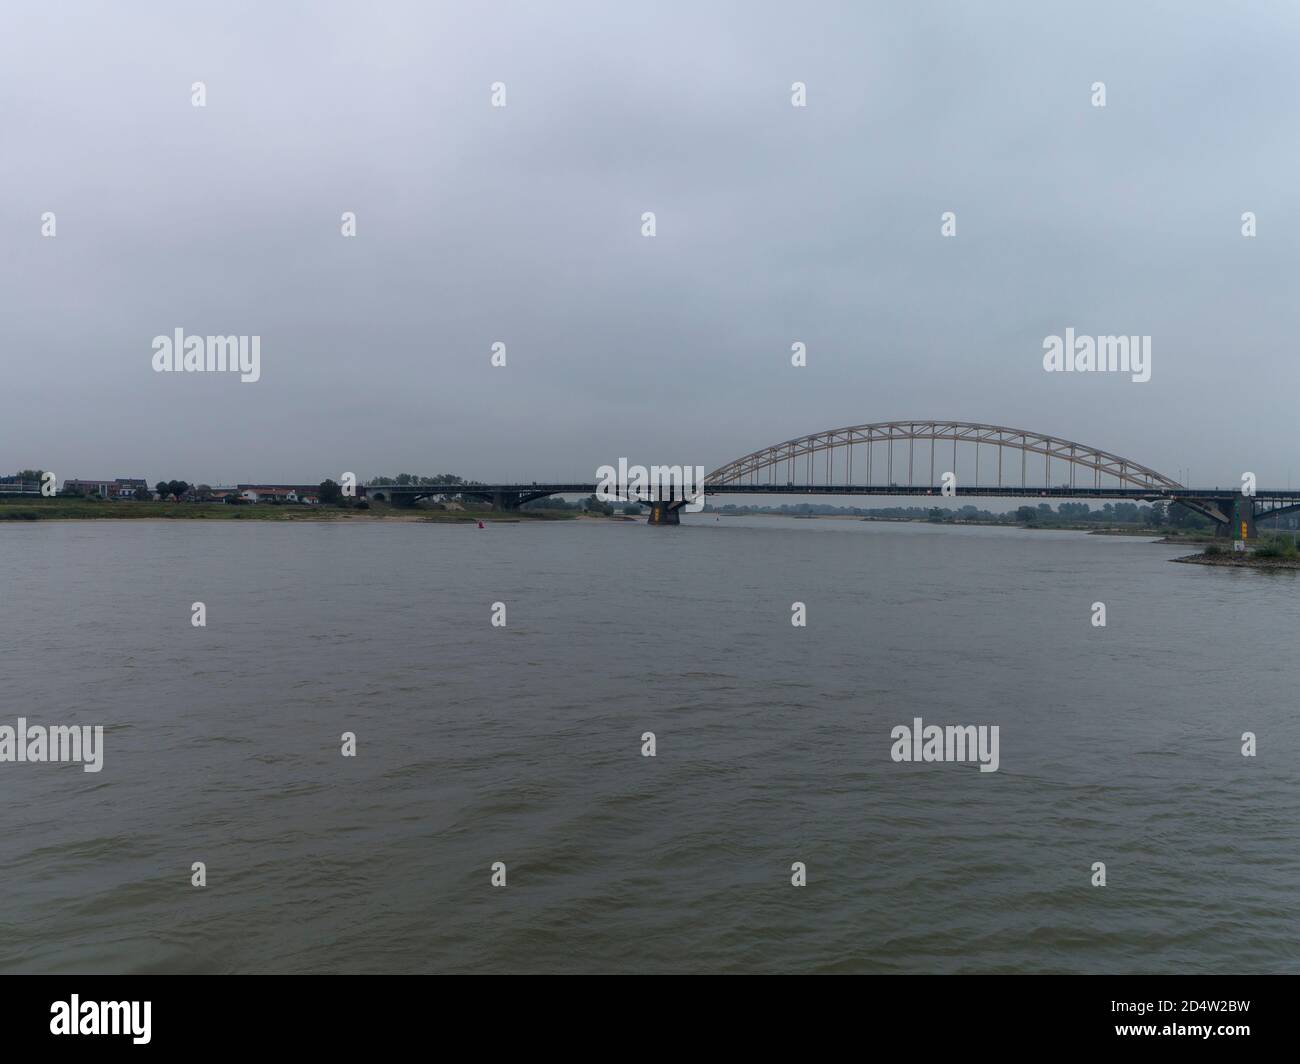 The Waalbrug bridge in Nijmegen, the Netherlands Stock Photo